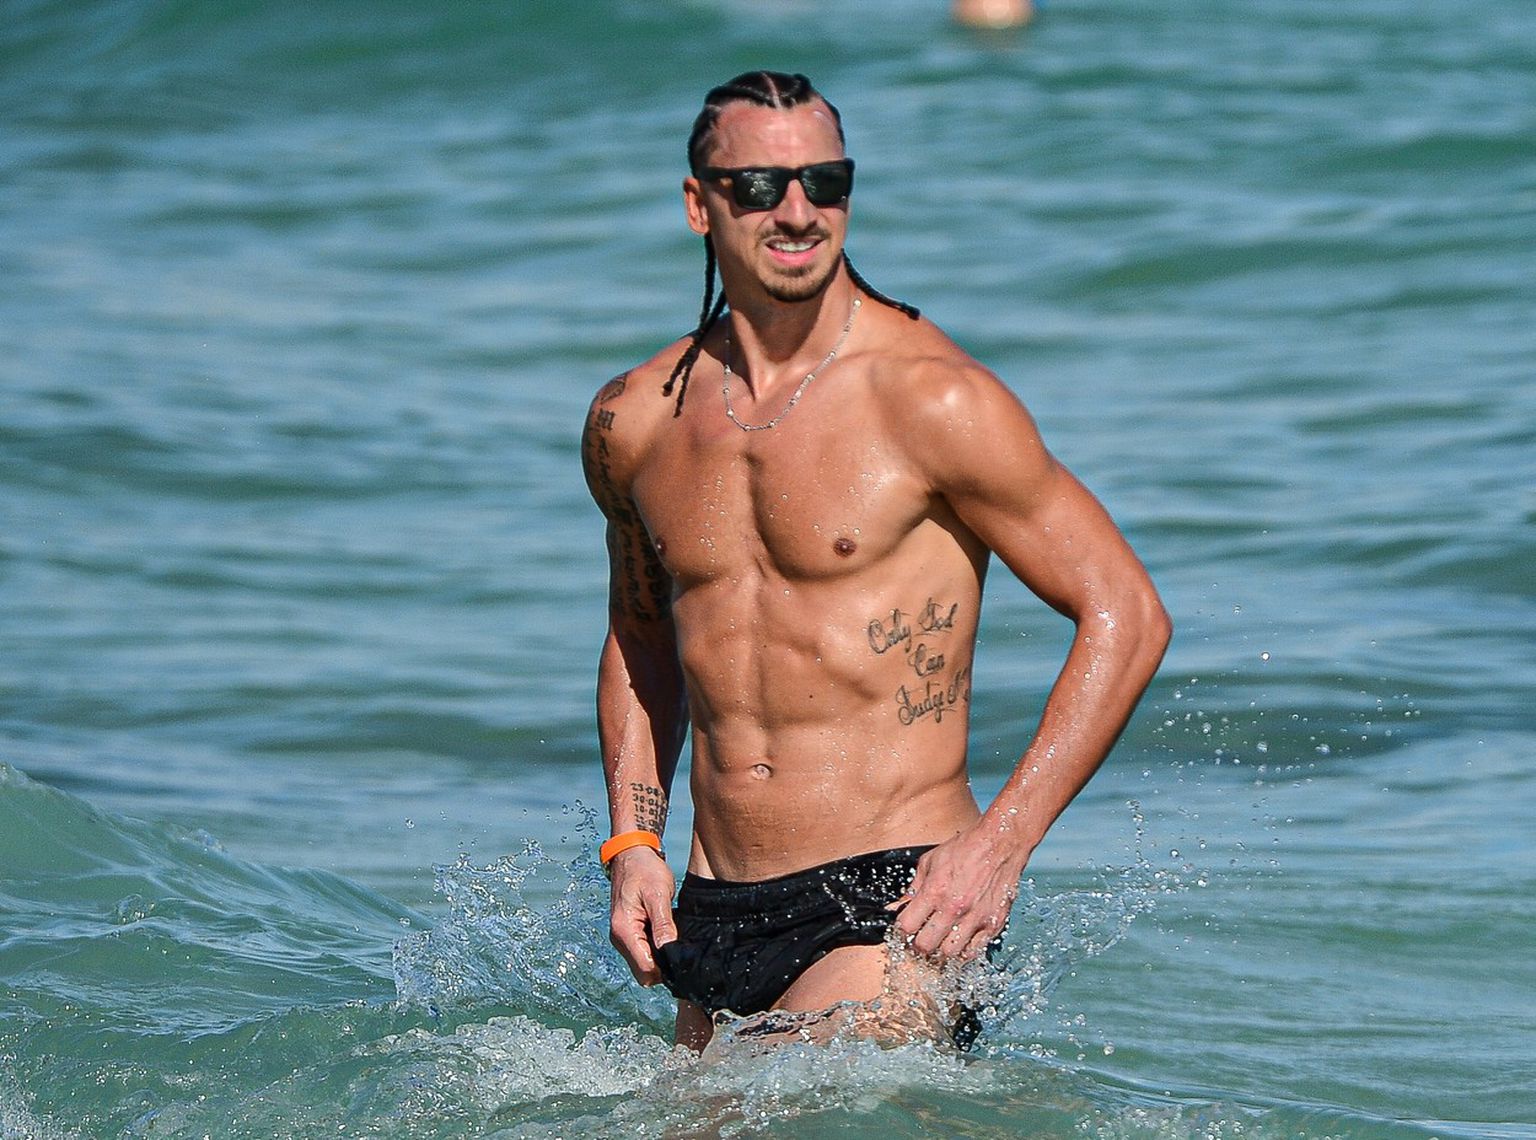 Slavni nogometaš Zlatan Ibrahimović postao je glavna zvijezda jedne plaže u Miamiju, gdje je ponosno pokazao svoje isklesane tijelo